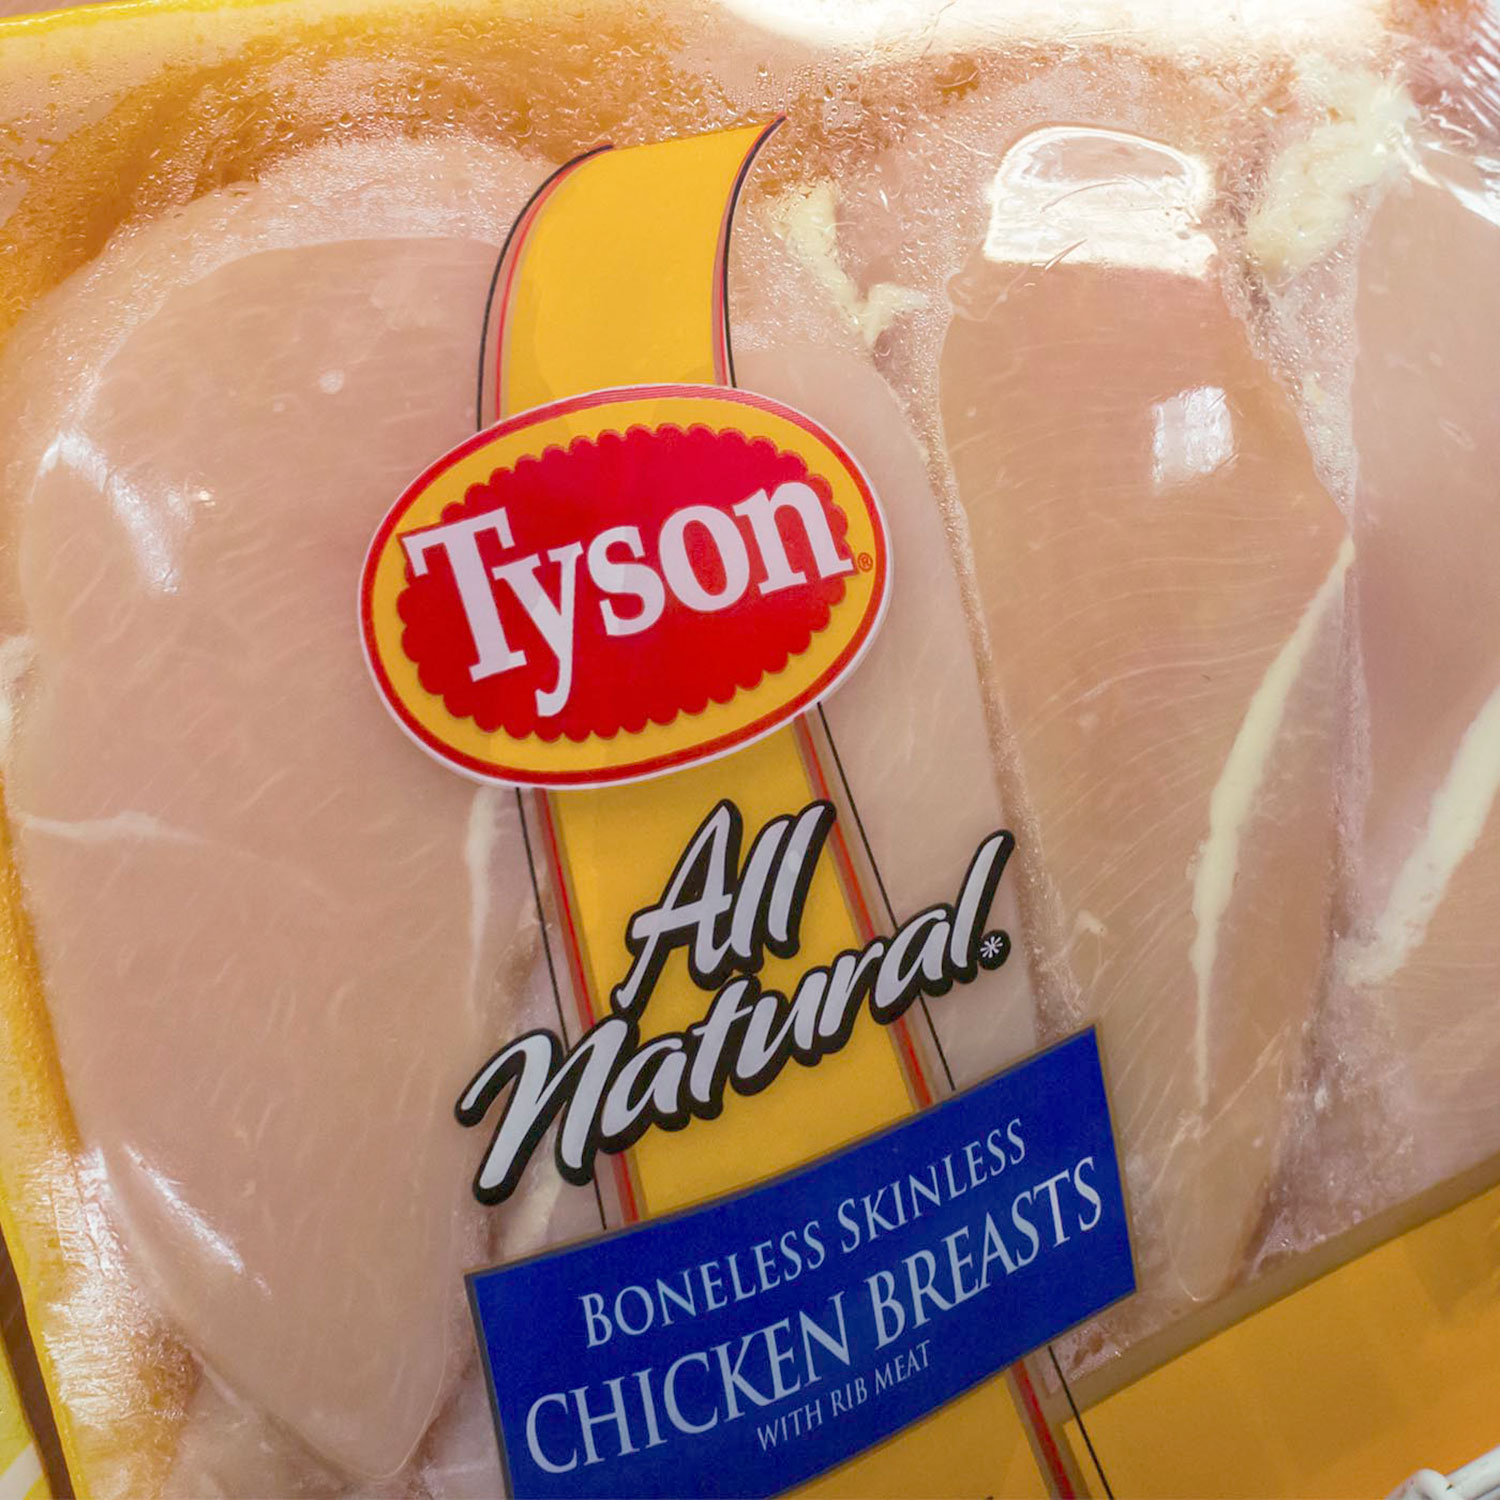 Tyson brand chicken breasts